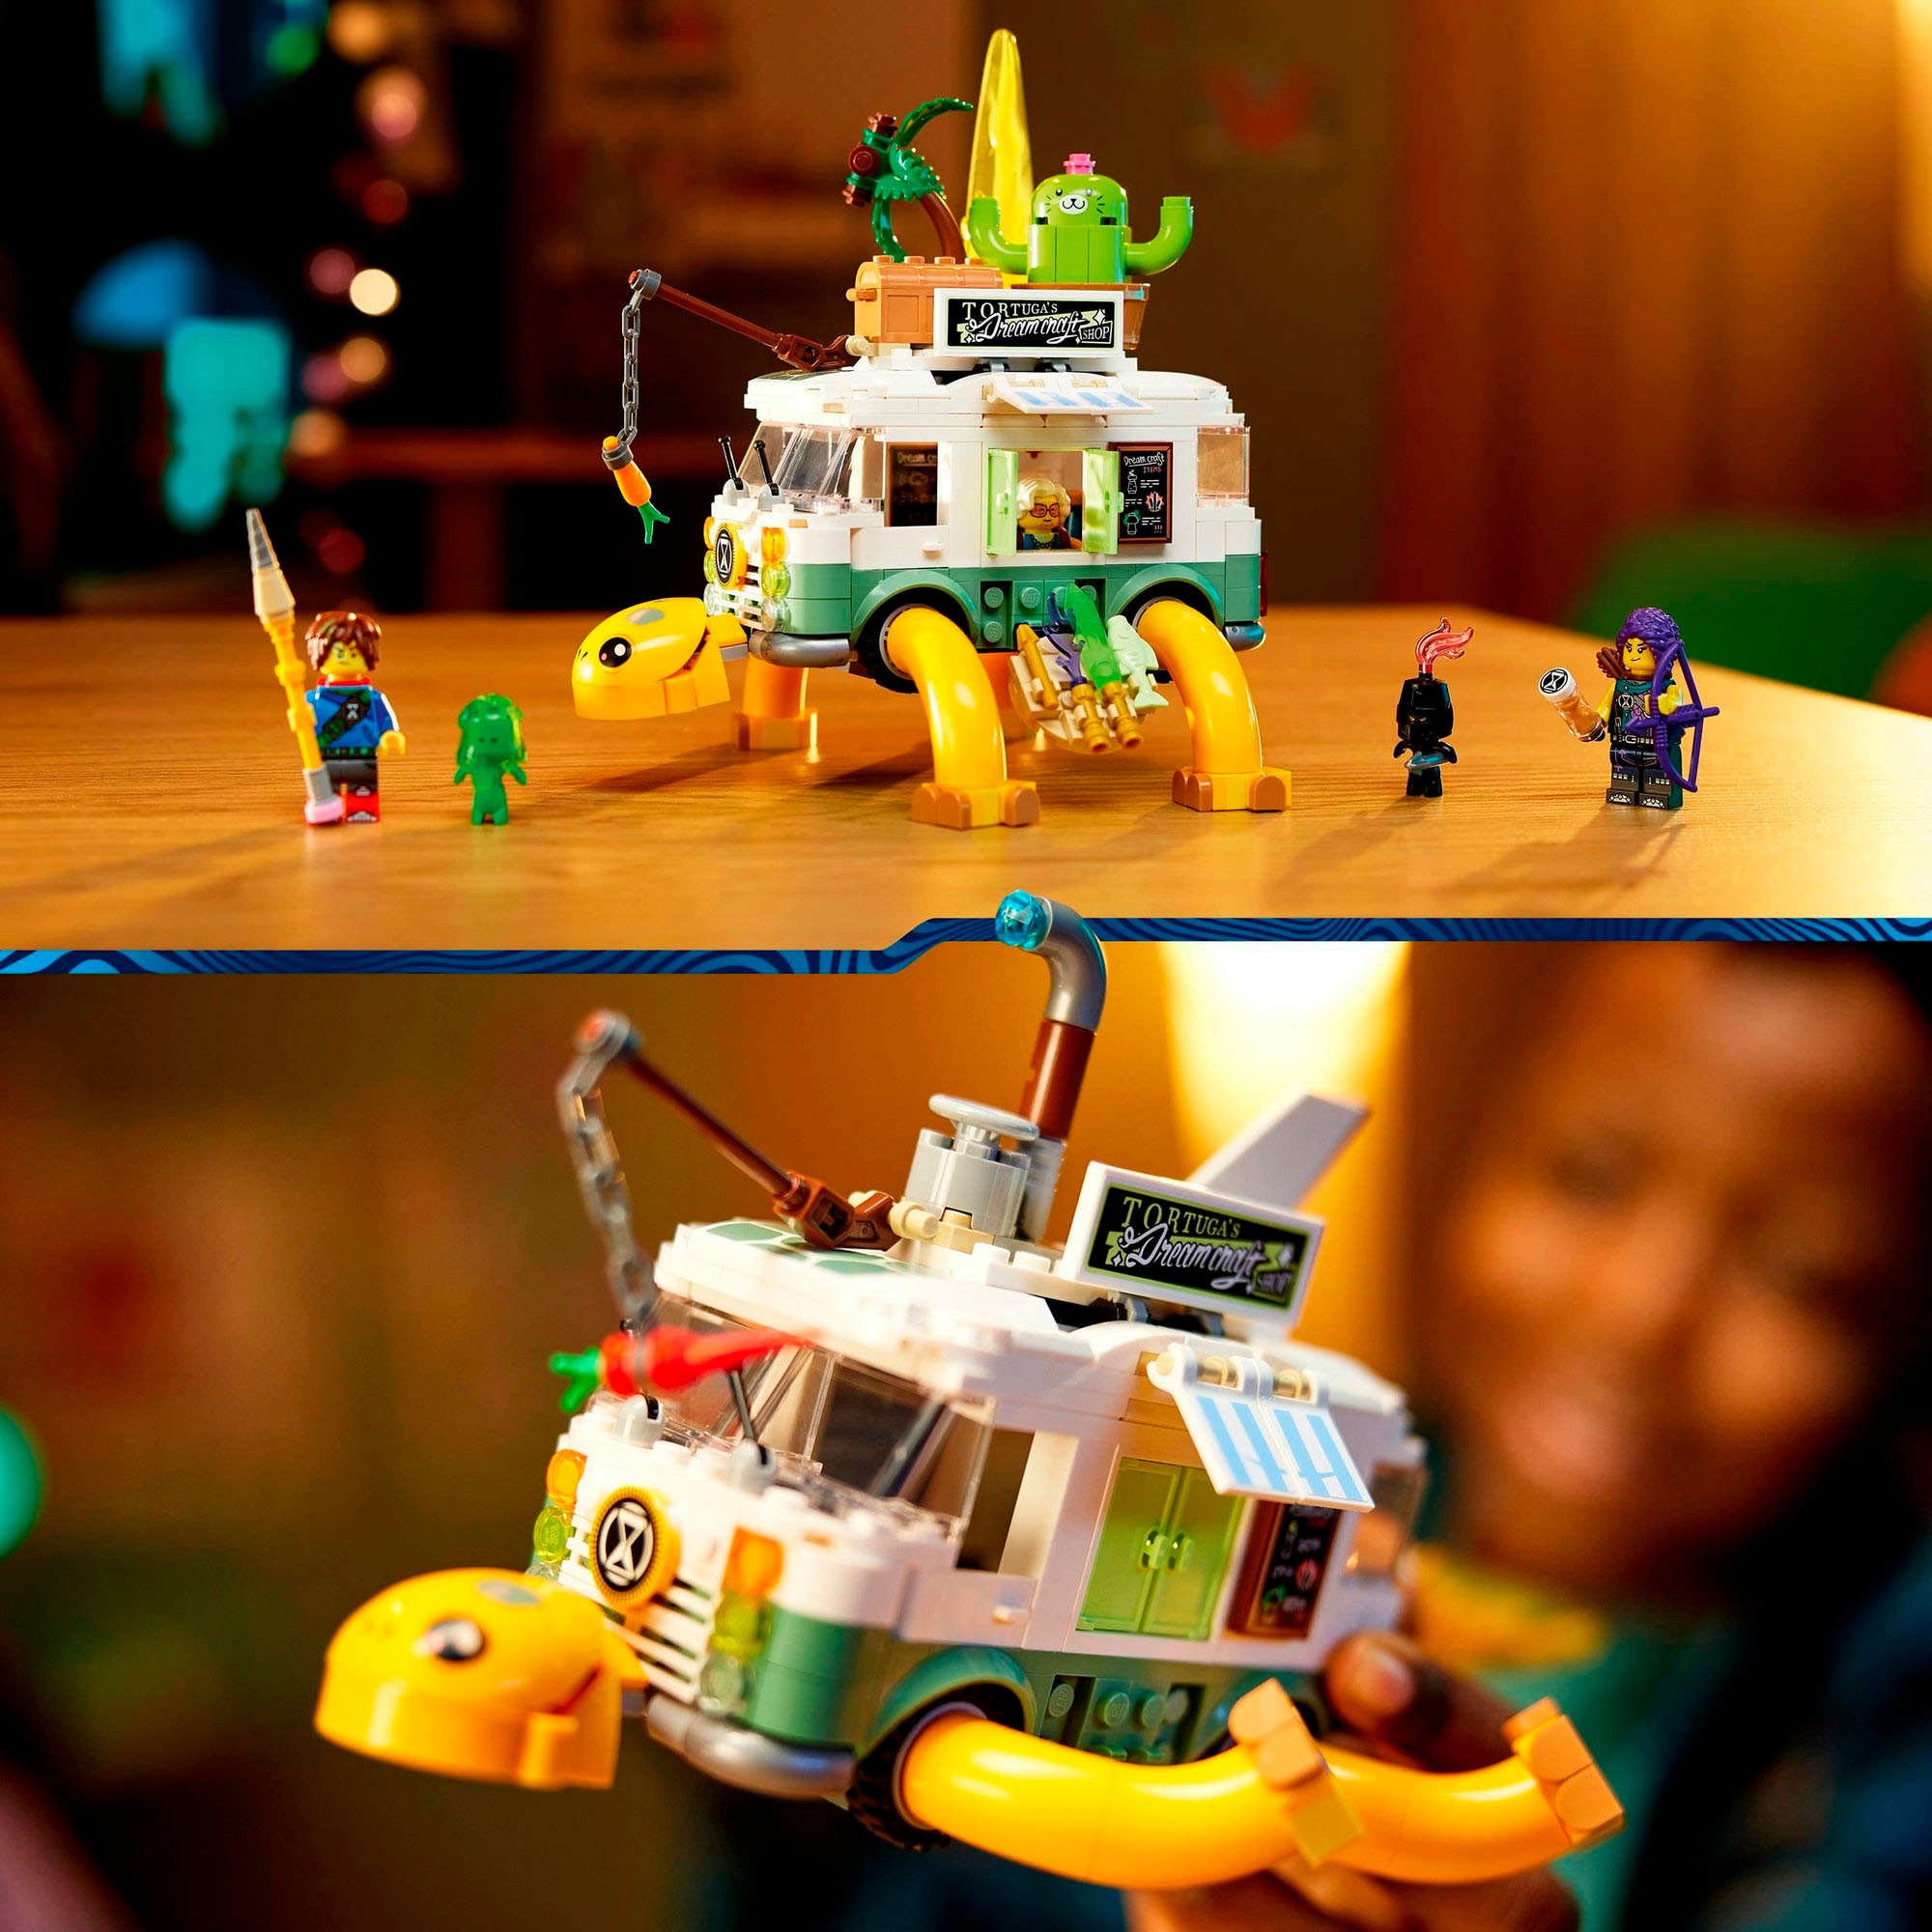 LEGO® Konstruktionsspielsteine »Mrs. Castillos Schildkrötenbus (71456), LEGO® DREAMZzz™«, (434 St.), Made in Europe